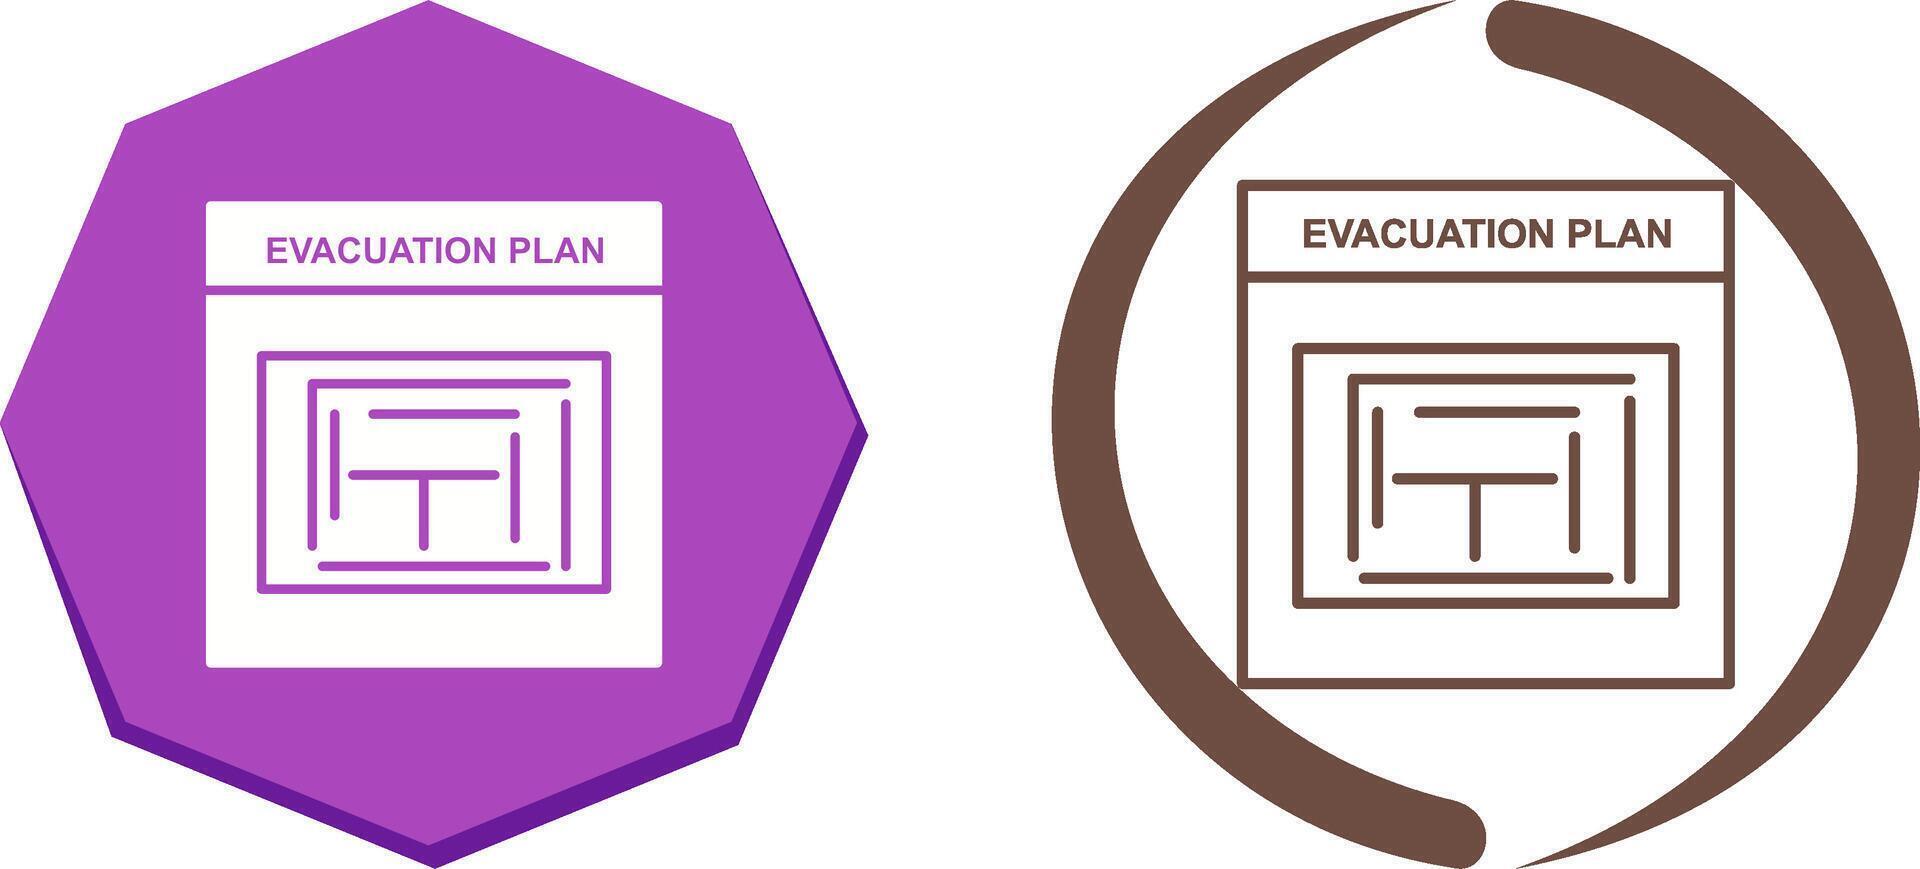 Evakuierungsplan-Icon-Design vektor